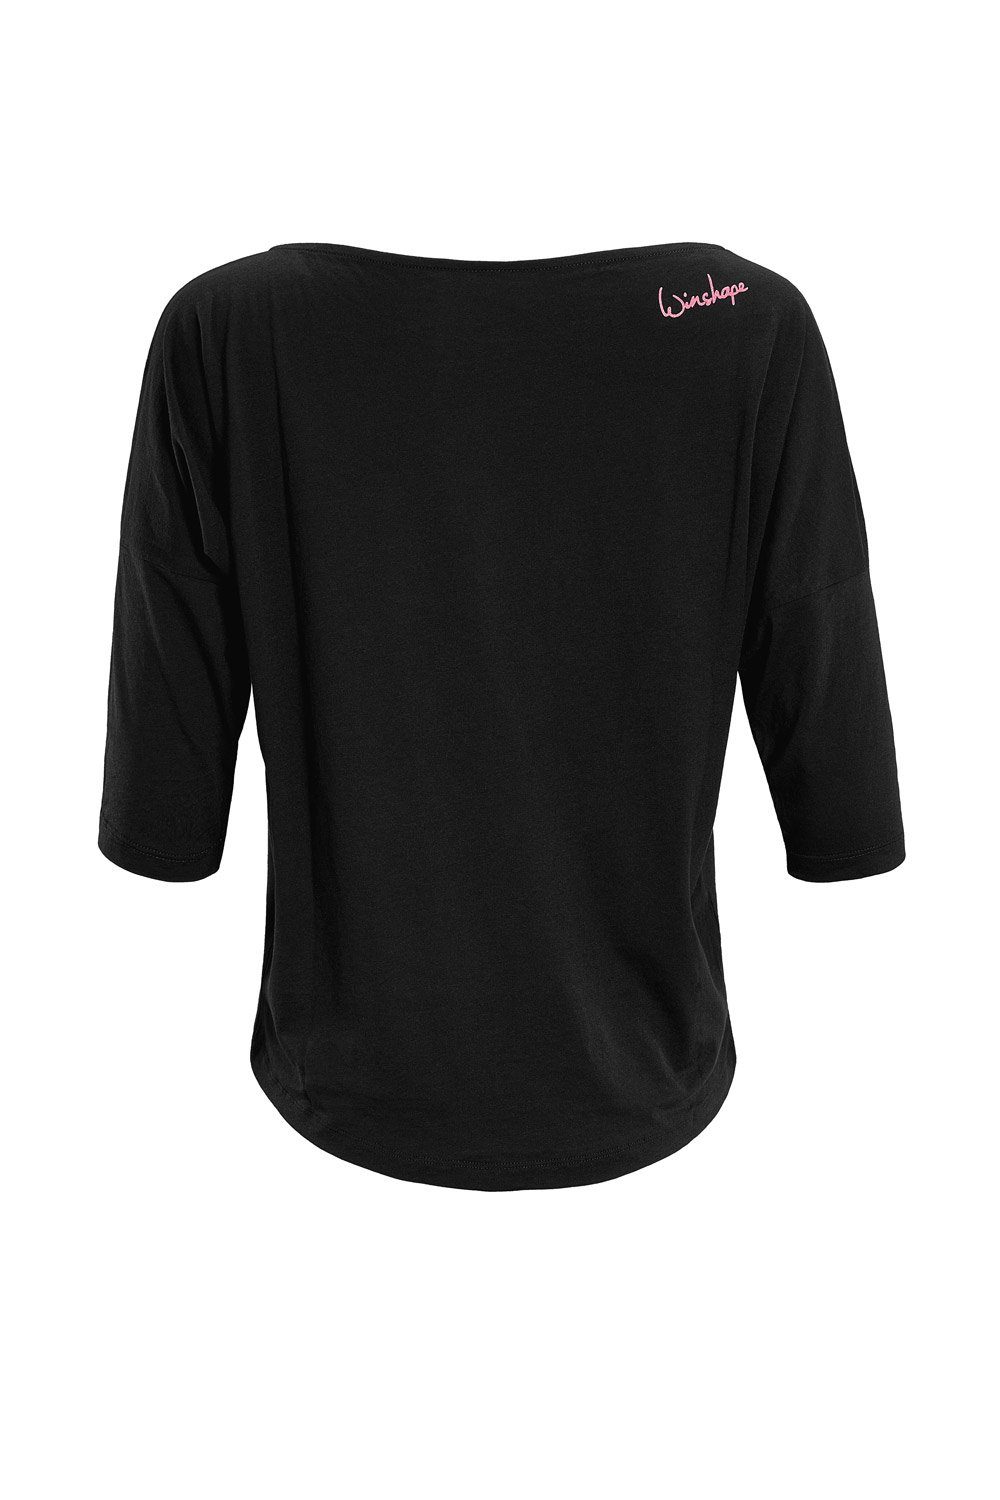 ultra Winshape leicht MCS001 Glitzer-Aufdruck pinkem mit Neon 3/4-Arm-Shirt